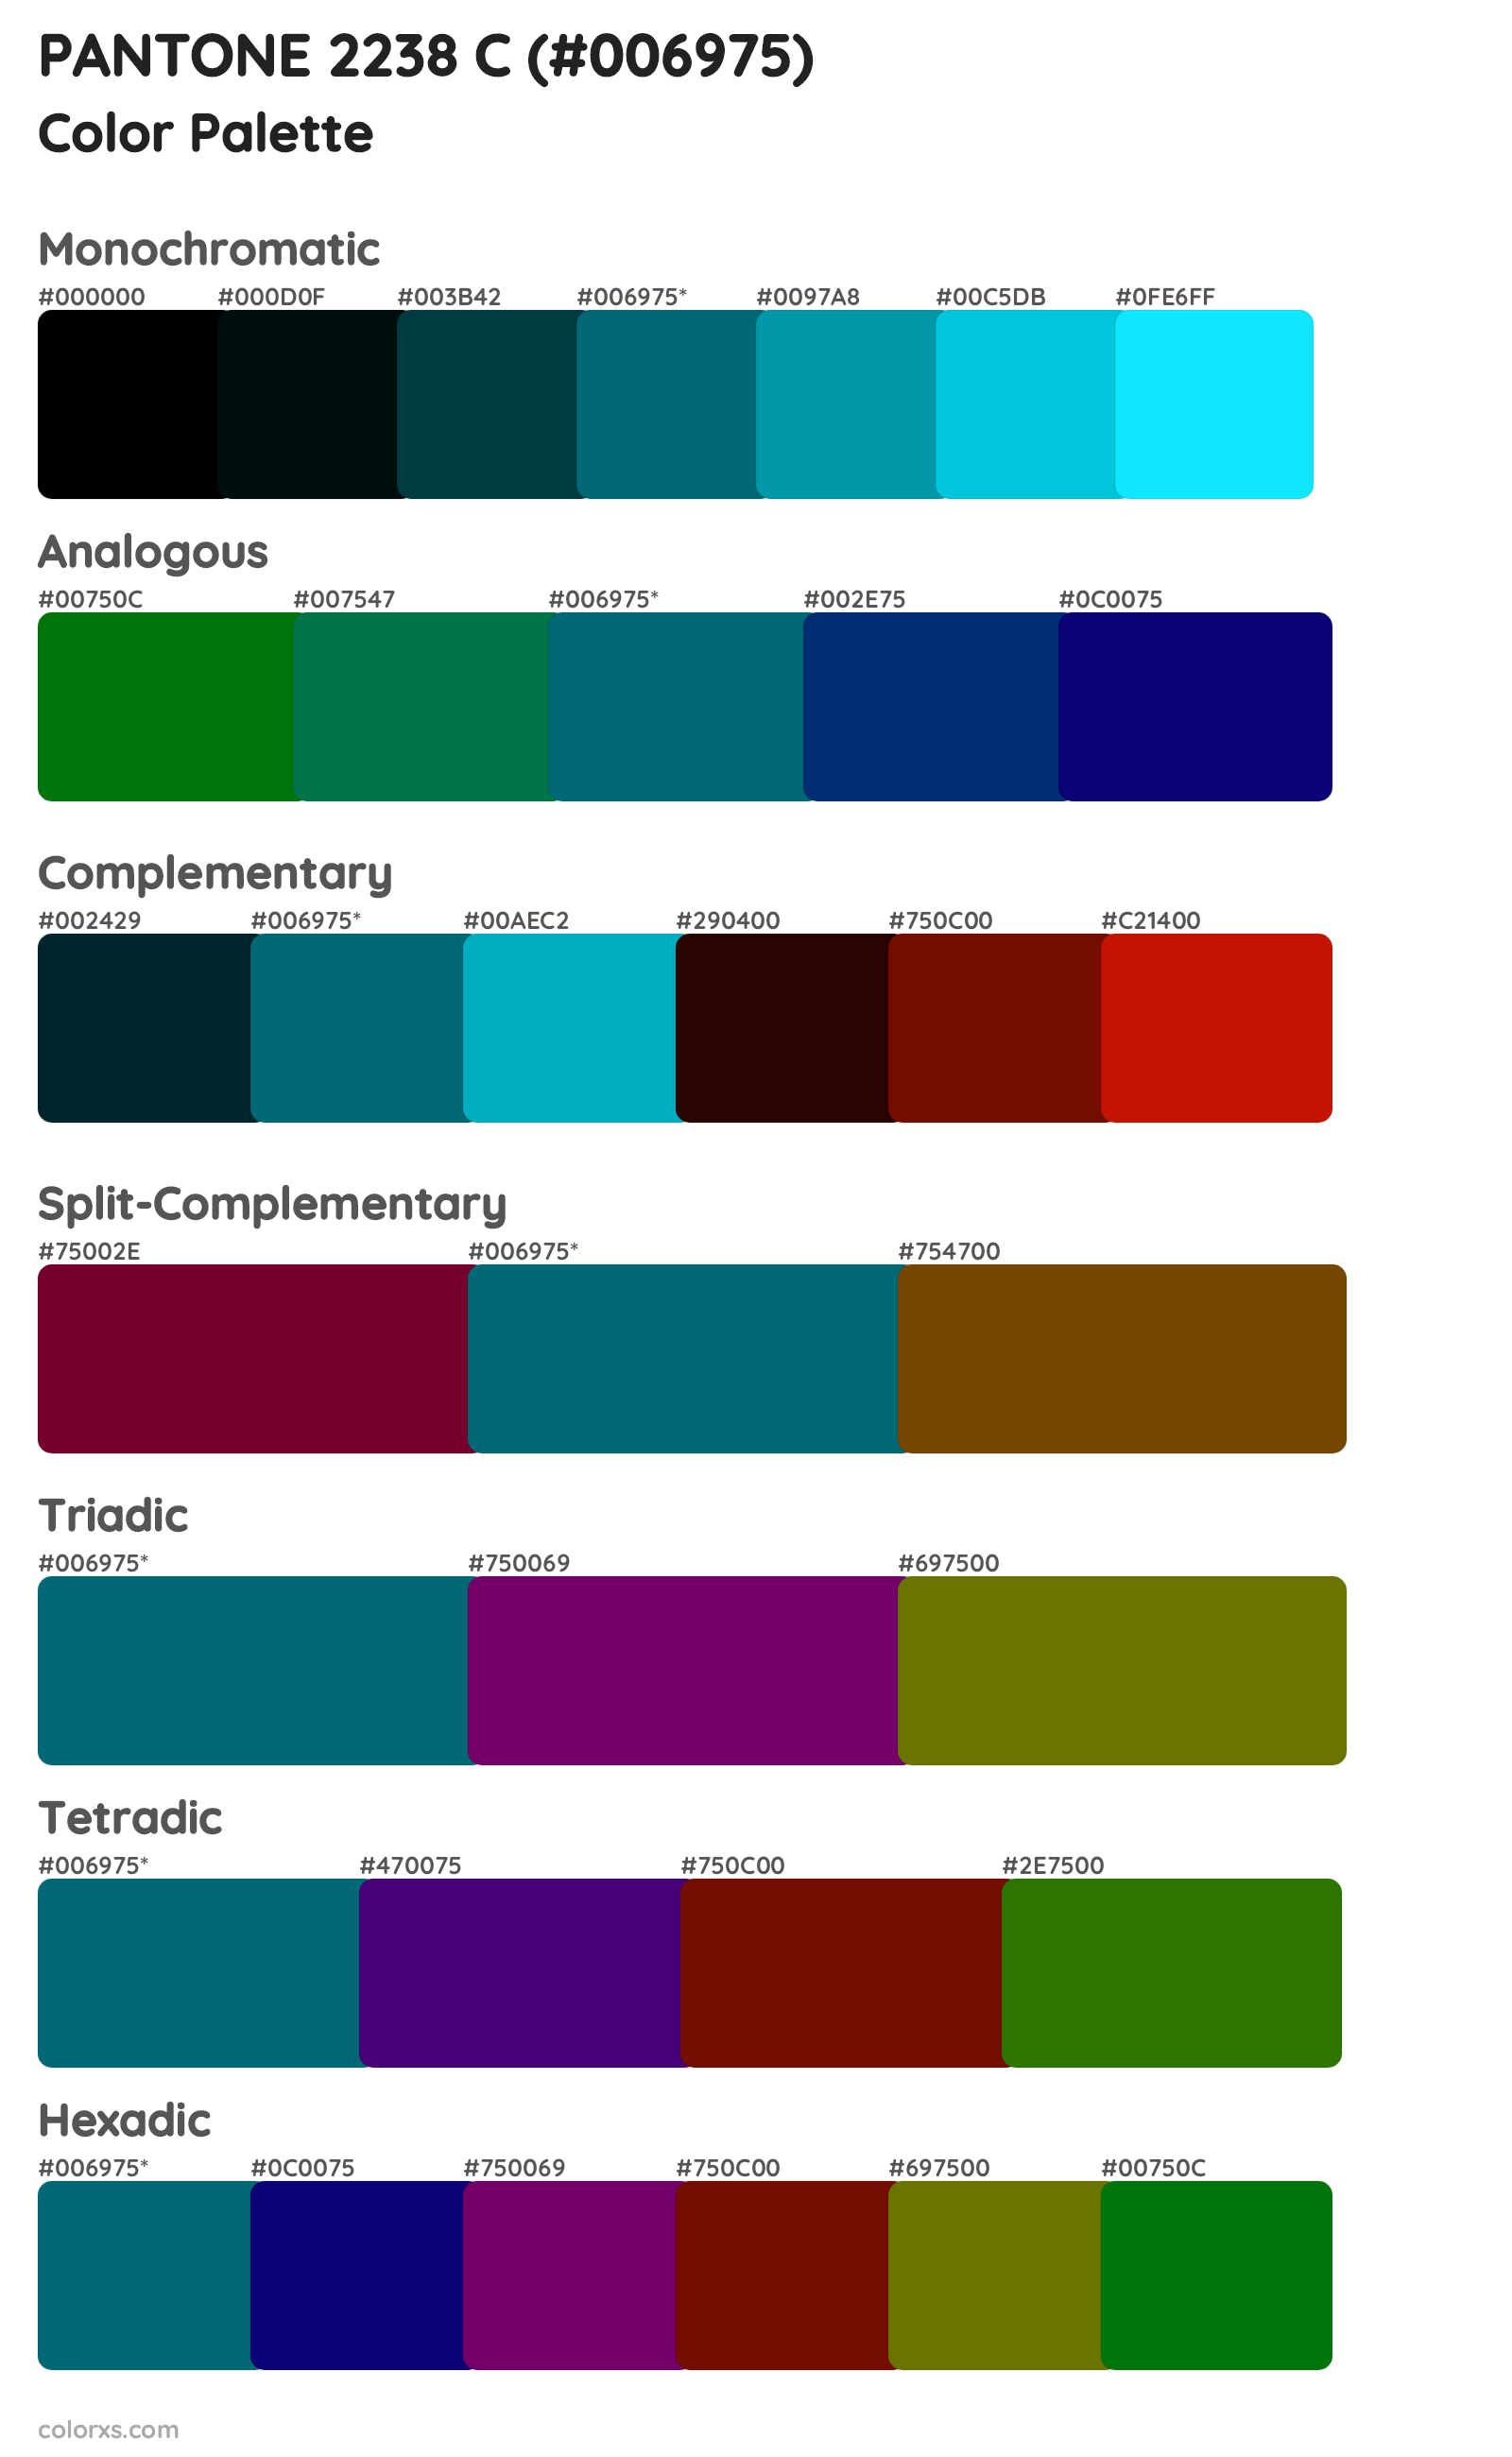 PANTONE 2238 C Color Scheme Palettes